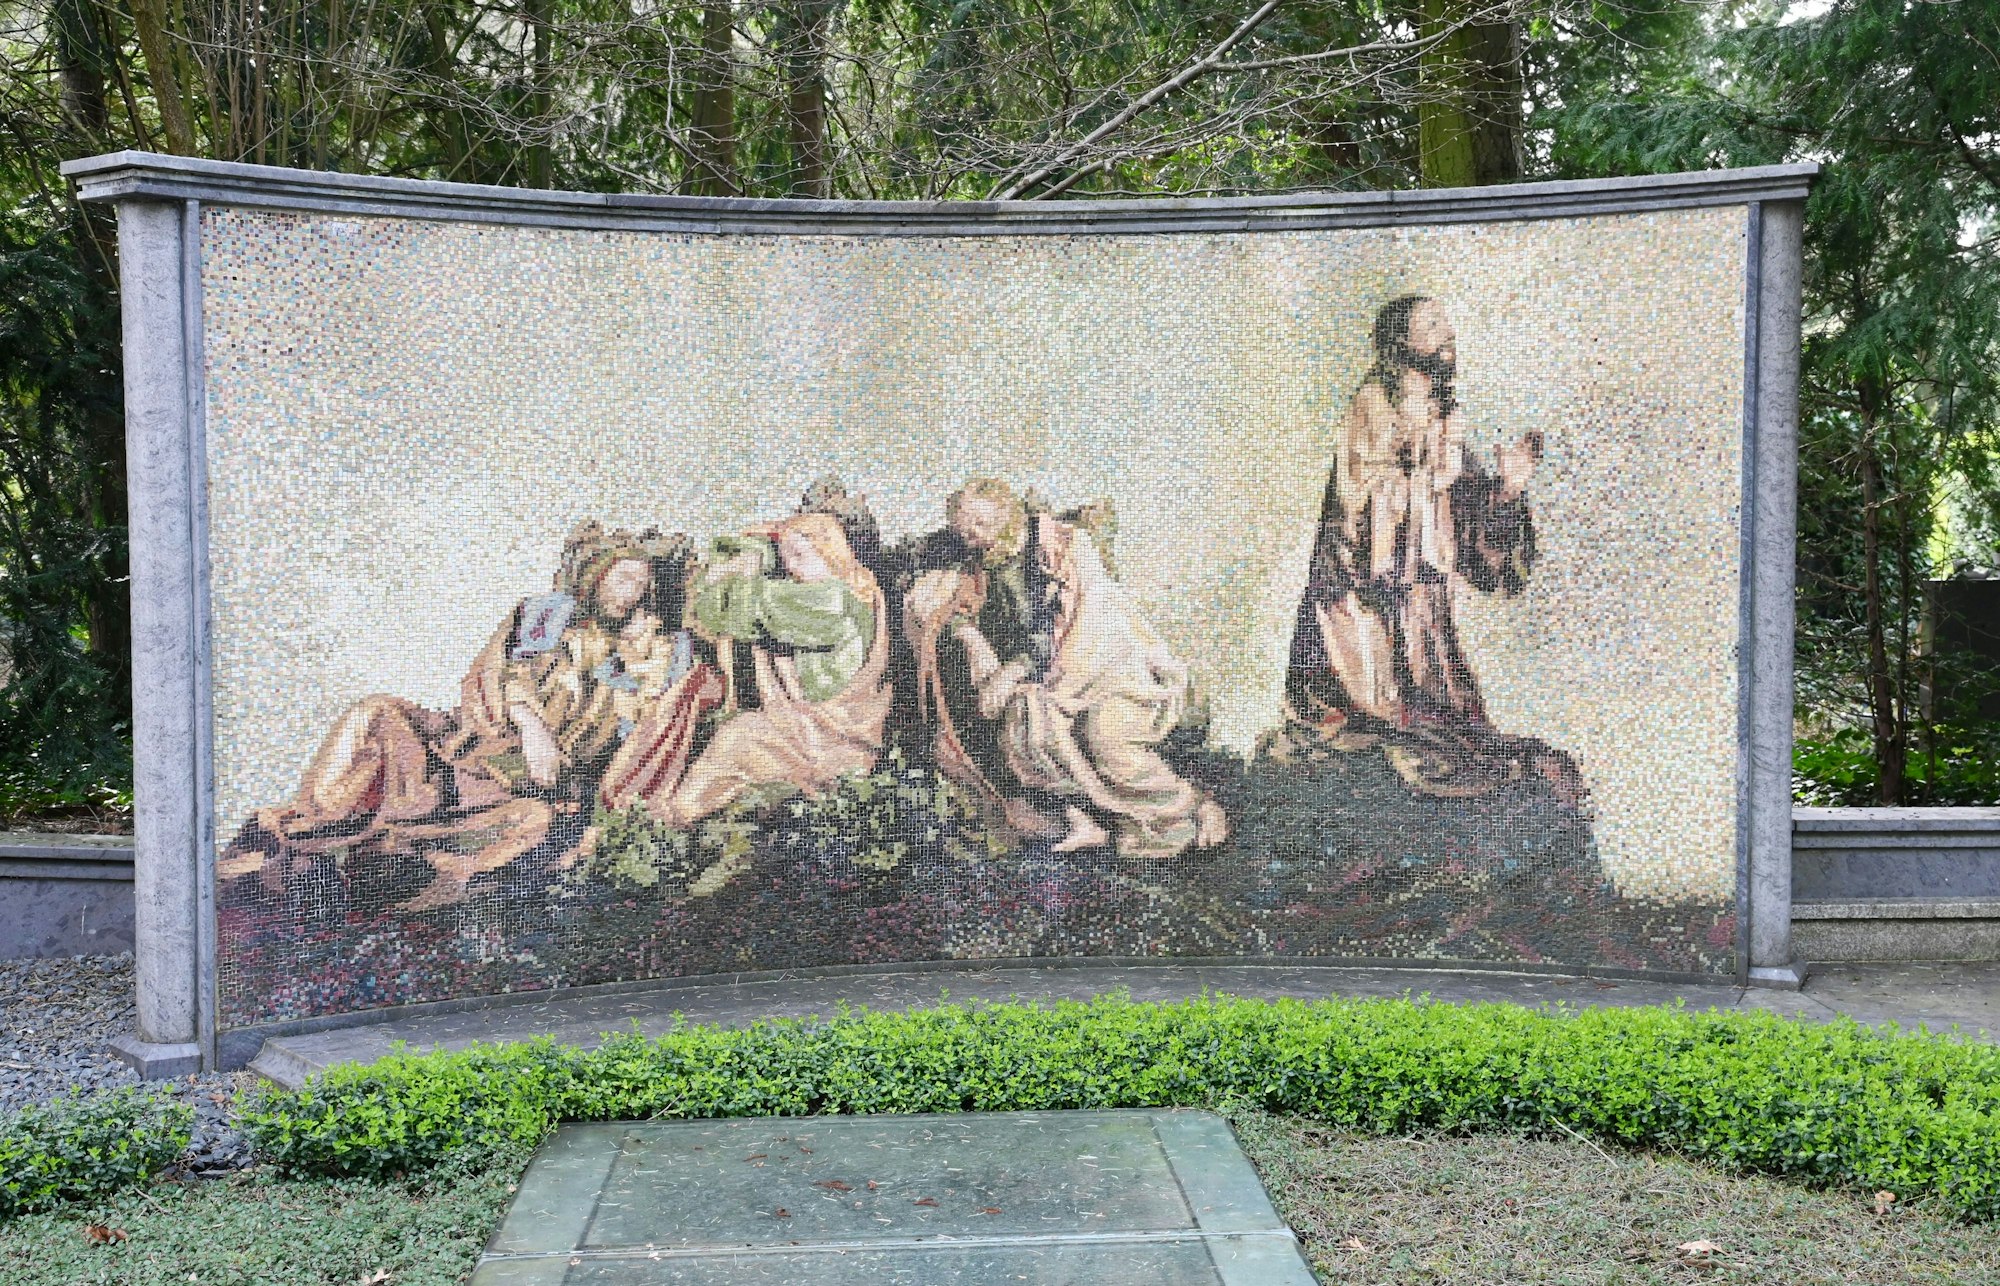 Grabstein mit Mosaiksteinen zeigt betenden Jesus und schlafende Jünger.